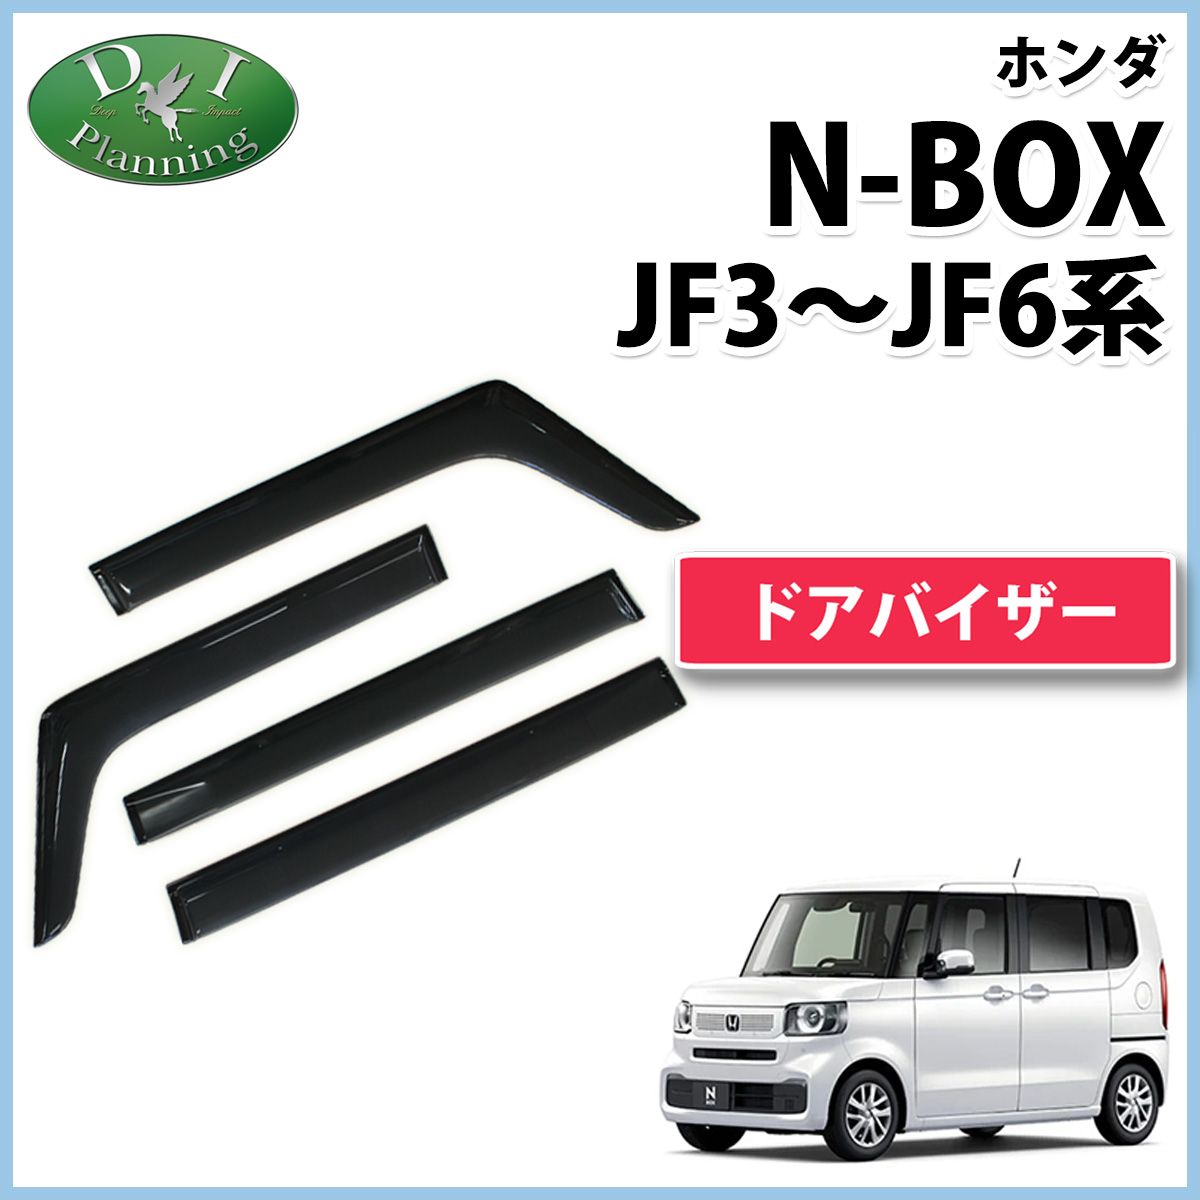 新型NBOX 現行型NBOX N-BOX N-BOXカスタム JF5 JF6 JF3 JF4 ドアバイザー サイドバイザー アクリルバイザー 自動車バイザー 社外ドアバイザー アクセサリー